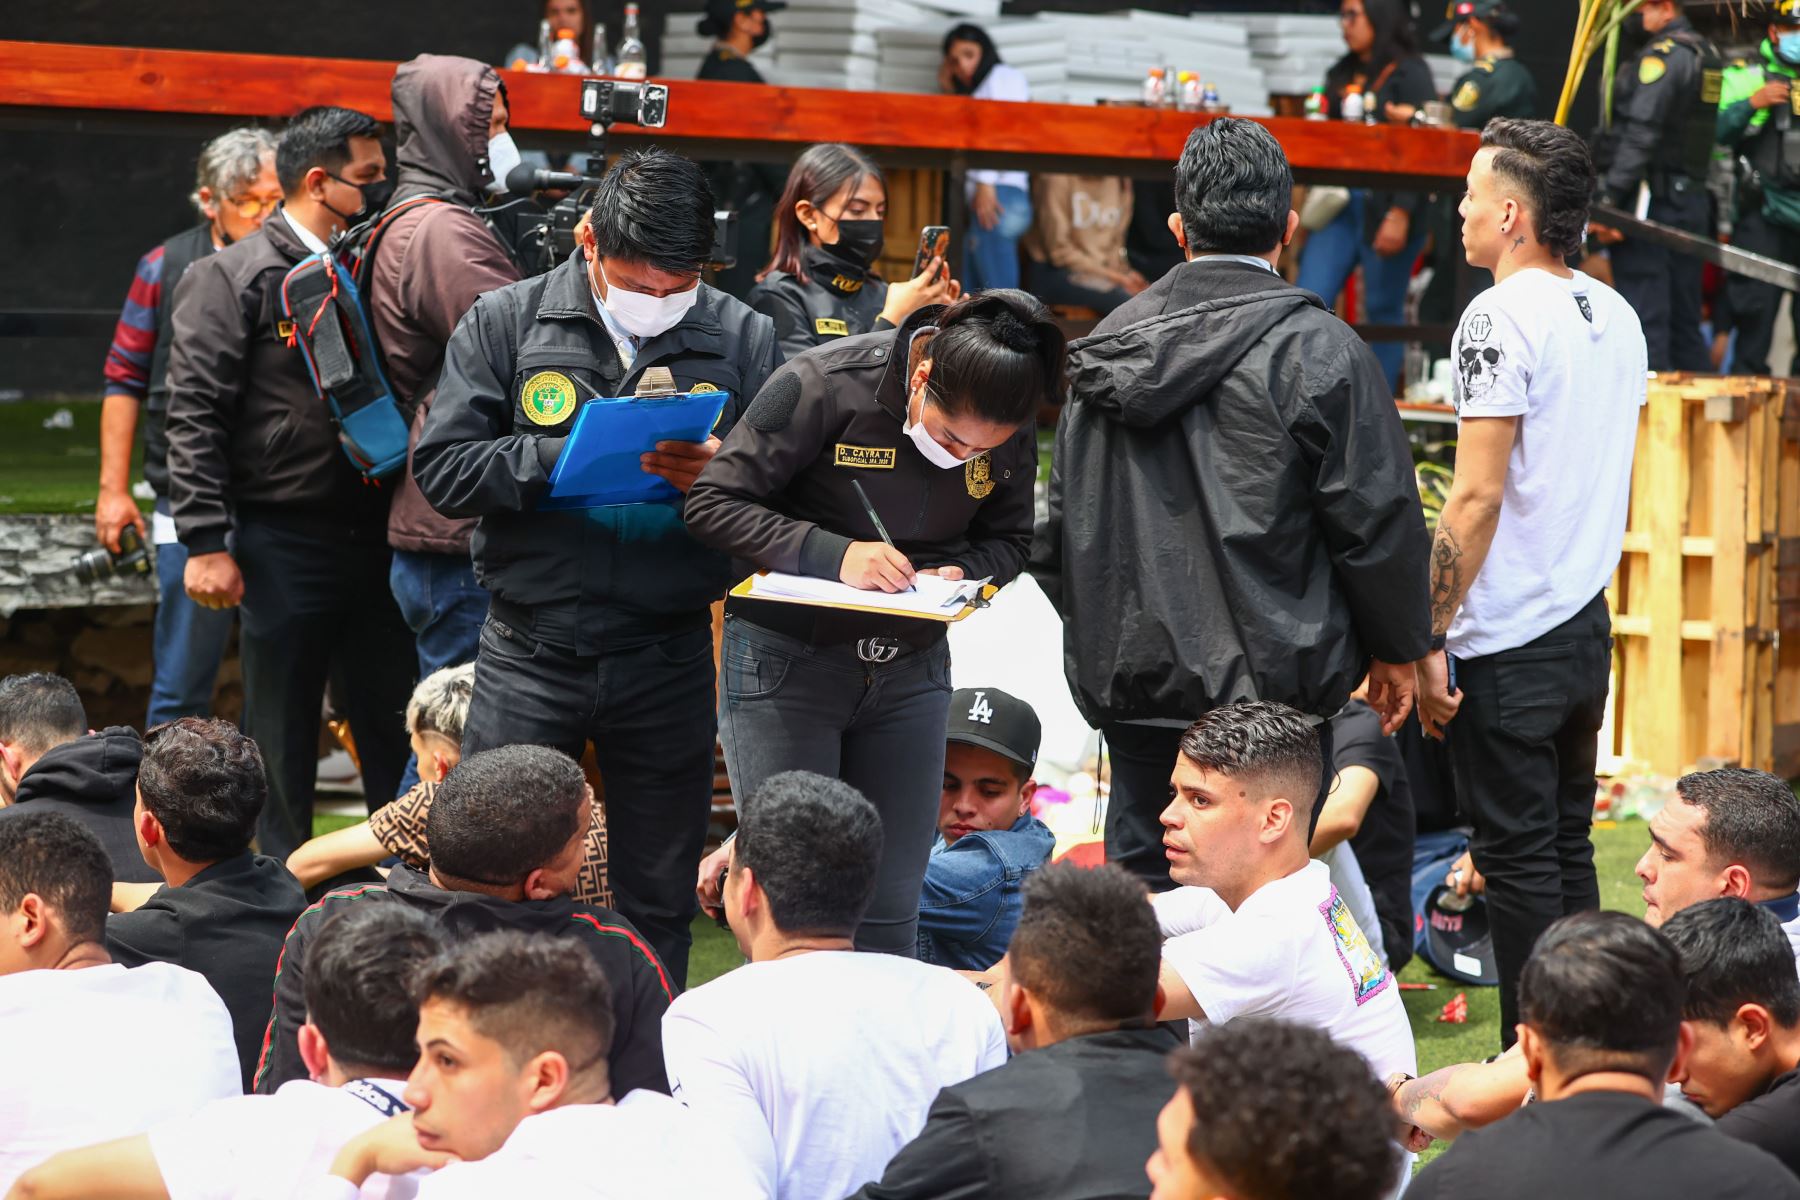 Esta mañana la policía nacional del Perú realizó un operativo en la discoteca ¨La Cabaña¨ ubicada en San Juan de Lurigancho, donde se ha detenido a un aprox. de 200 personas, entre hombres, mujeres y menores de edad. Así mismo se ha incautado 12 armas de fuego, así como diferentes drogas.
Foto: ANDINA/Andrés Valle